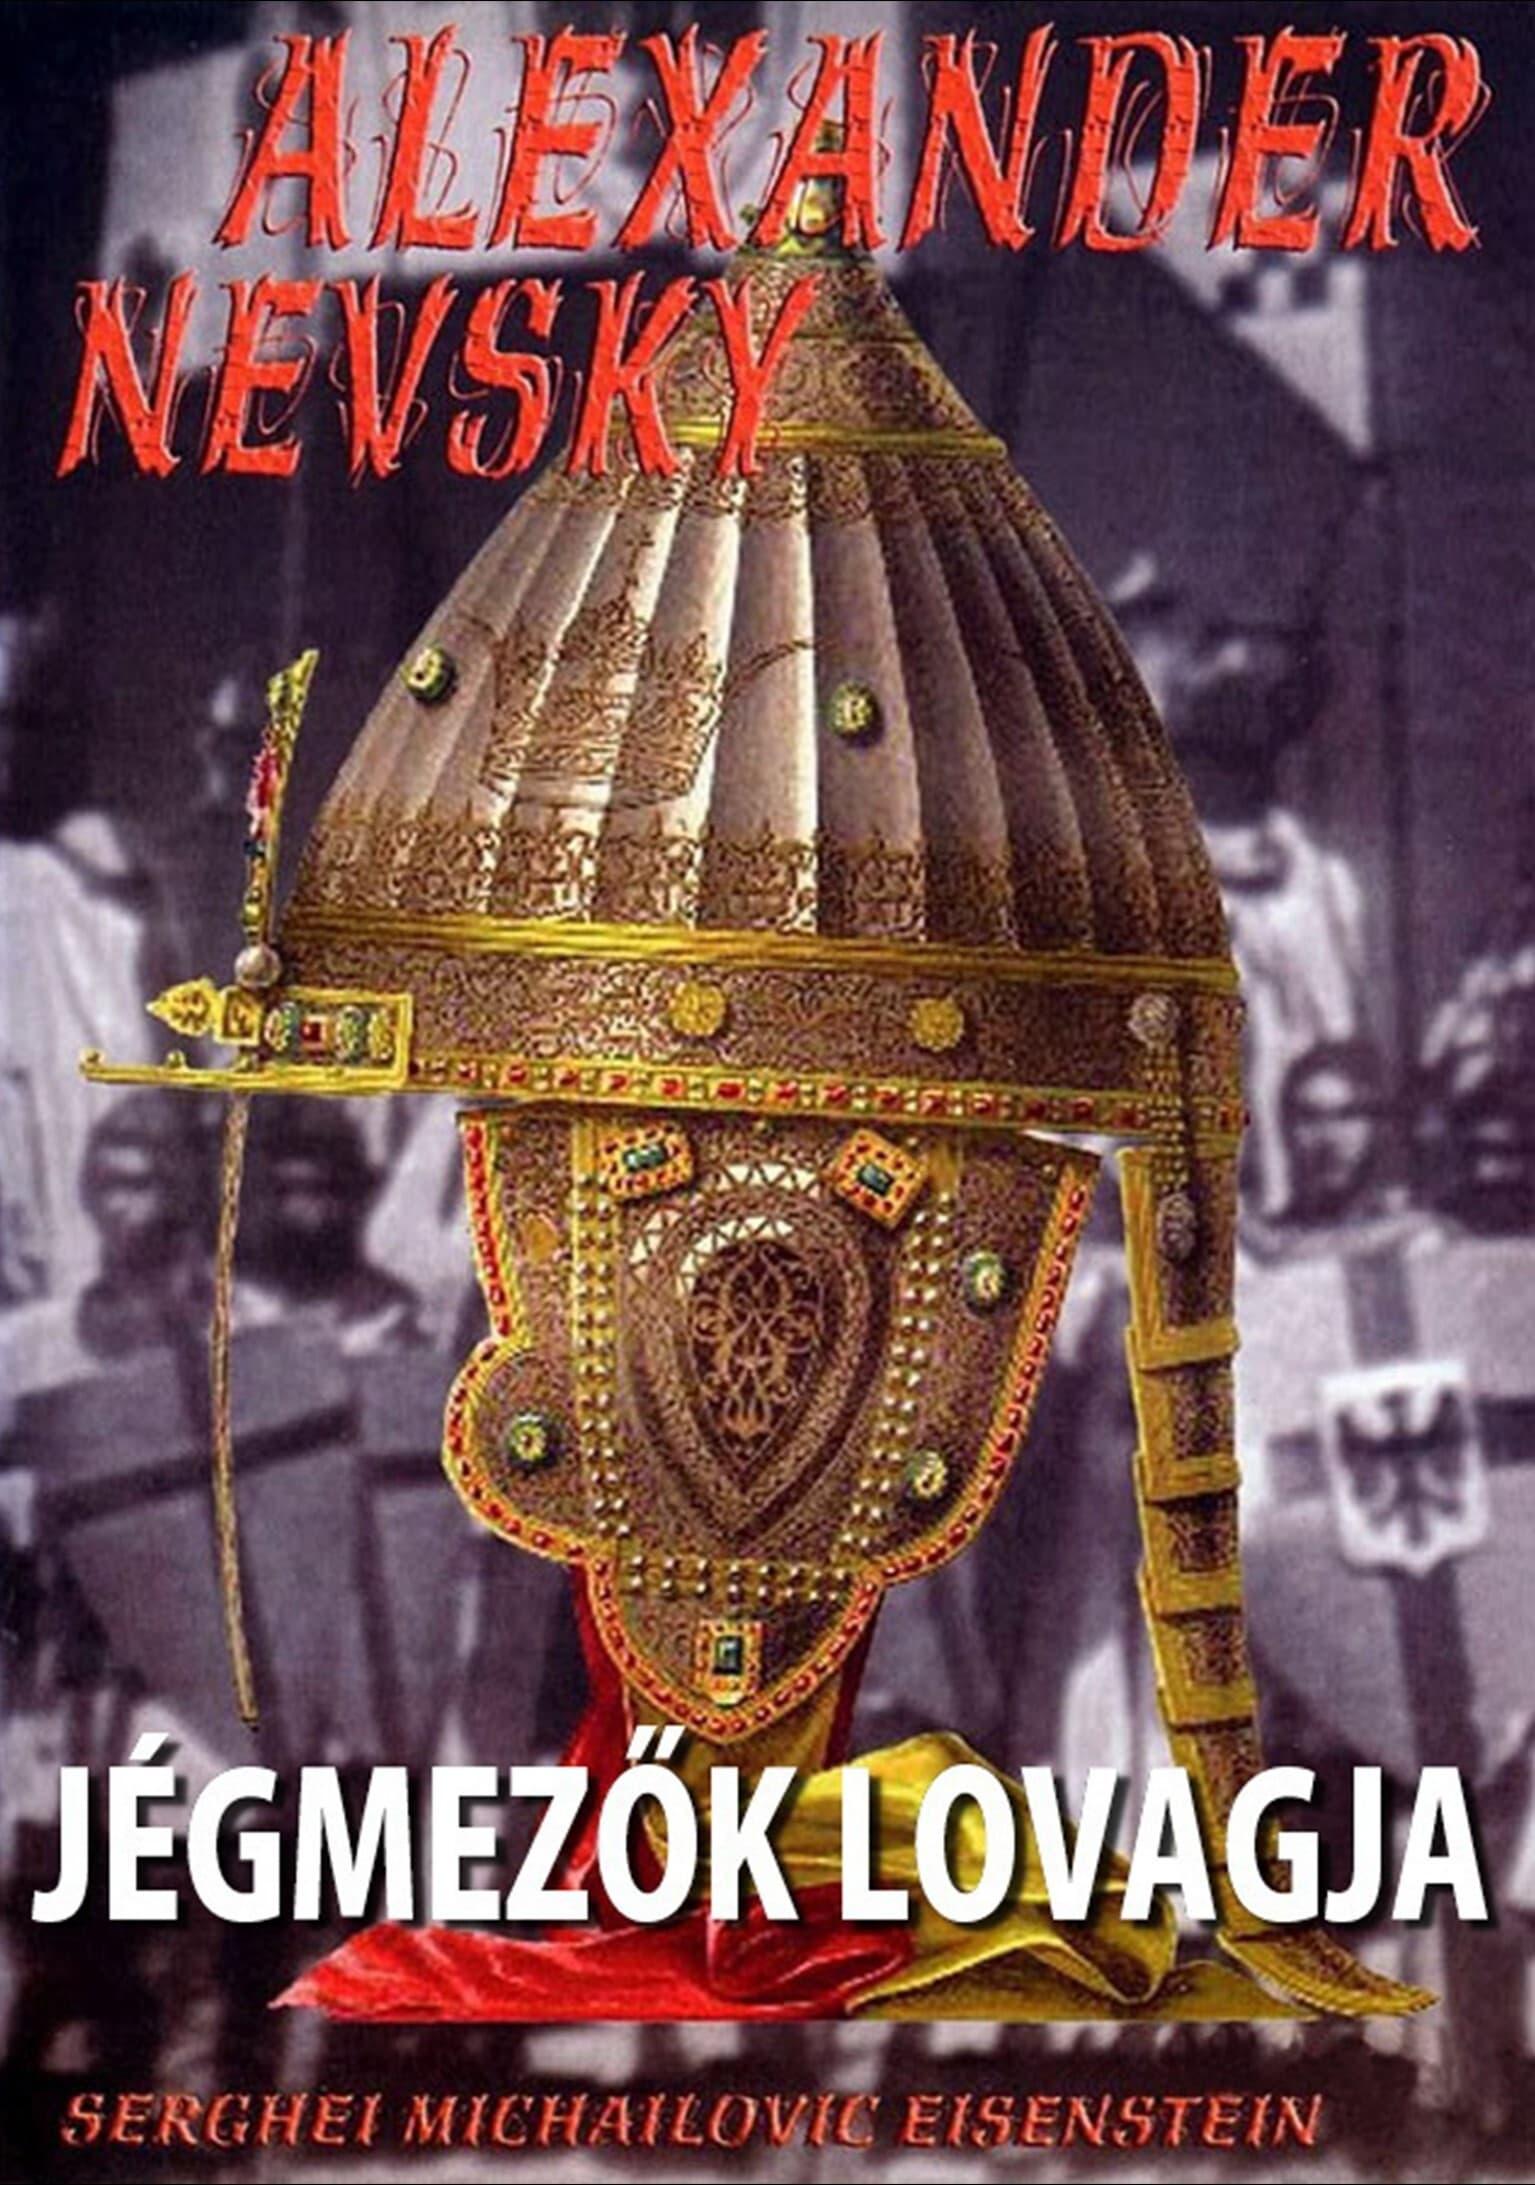 Jégmezők lovagja (Alekszandr Nyevszkij) 1938.